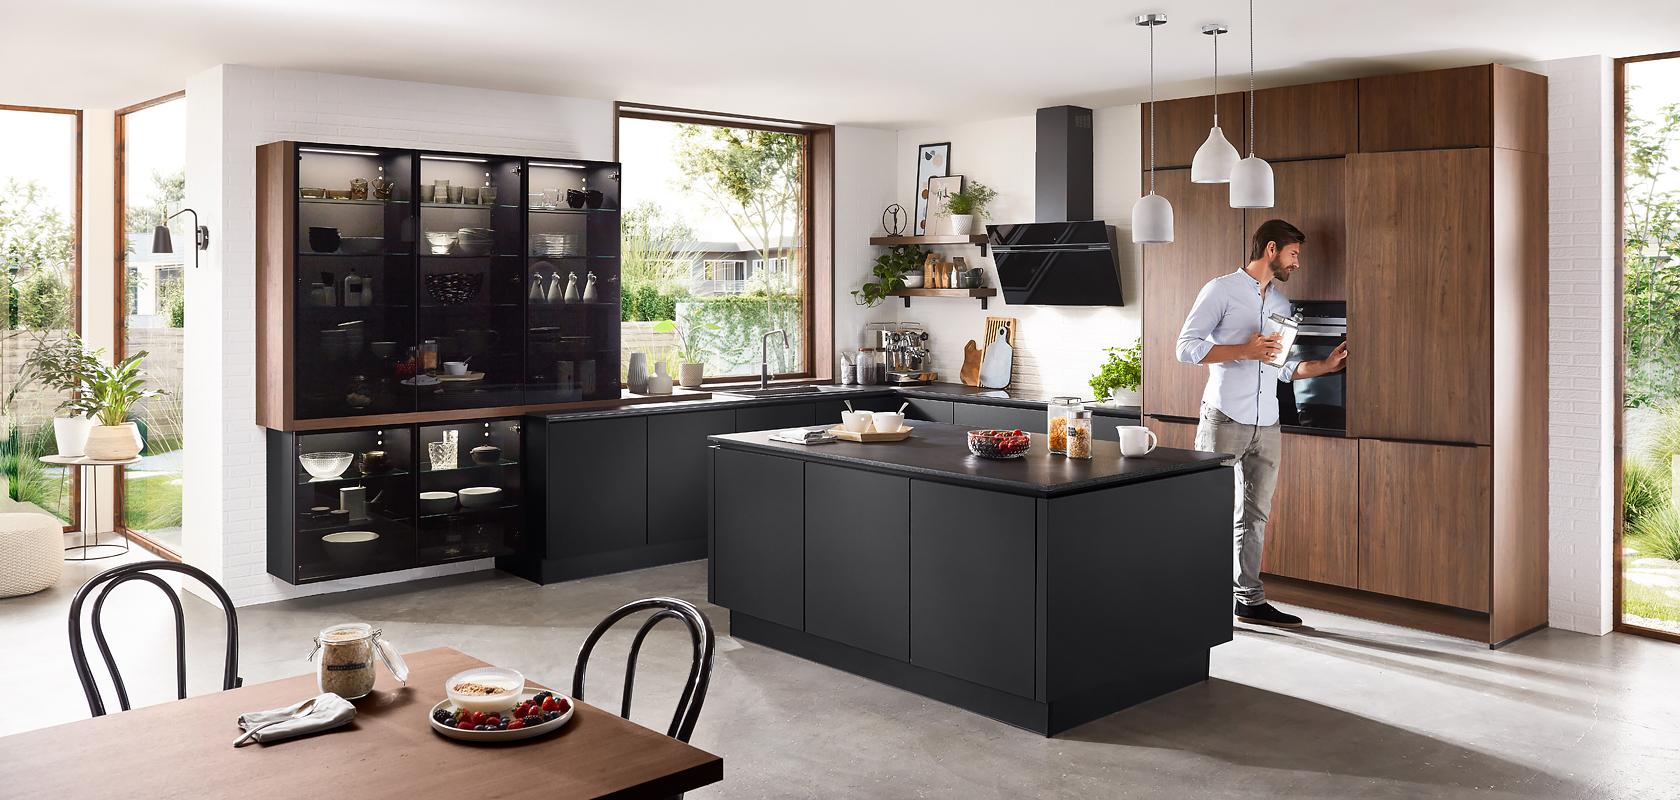 Moderní kuchyňský interiér s elegantními černými skříňkami, dřevěnými doplňky a mužem, který připravuje nápoj na pracovní desce, vytvářející domáckou a zároveň moderní atmosféru.